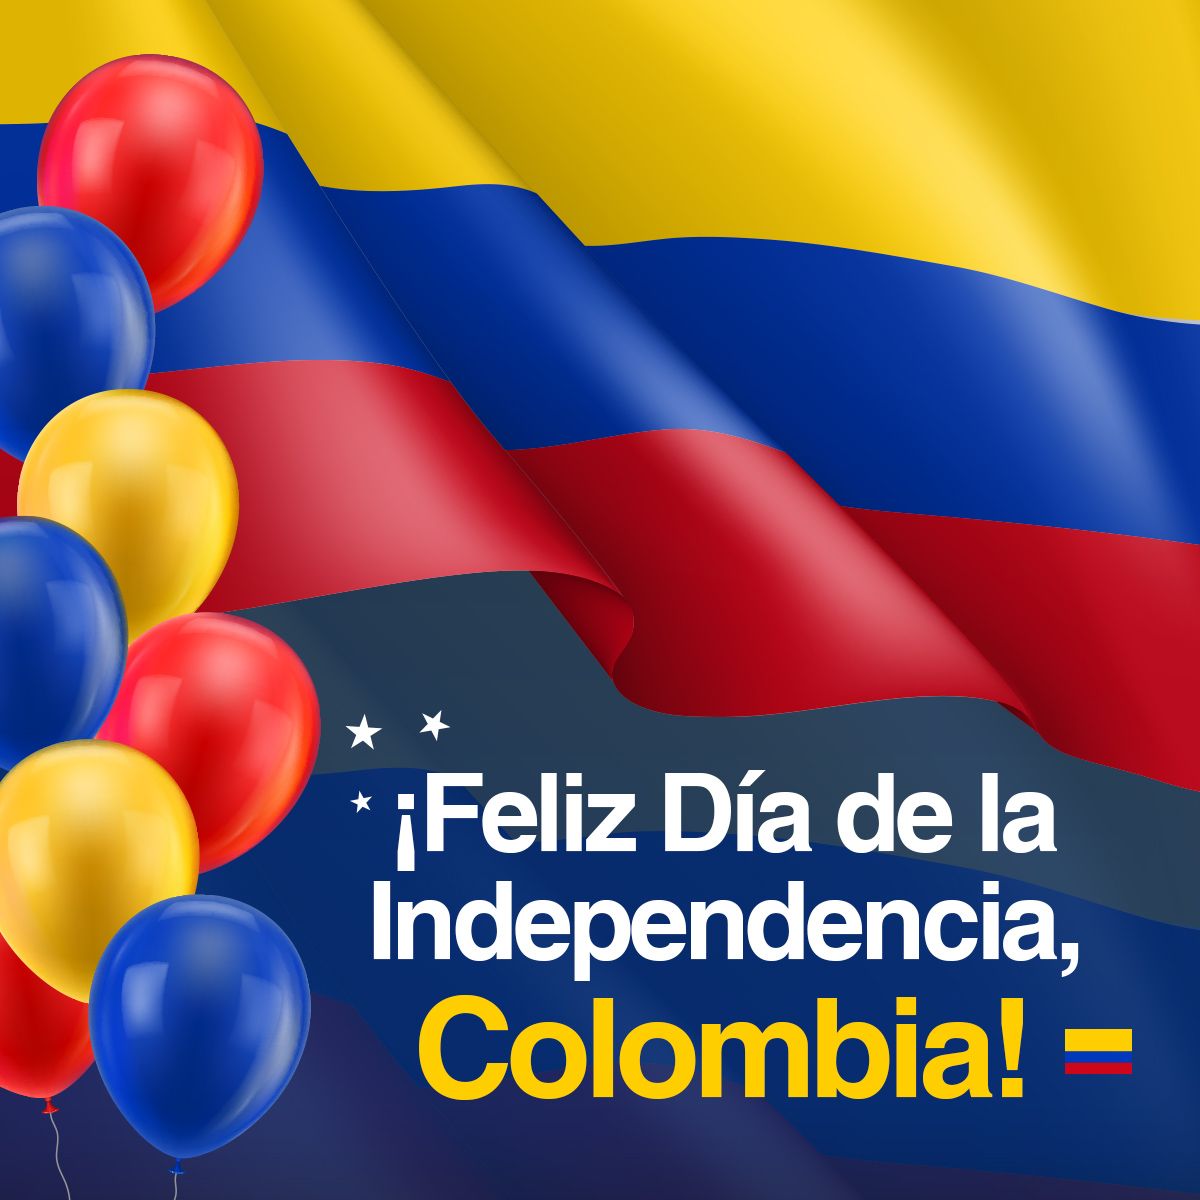 ¡Feliz Día de la Independencia, Colombia!